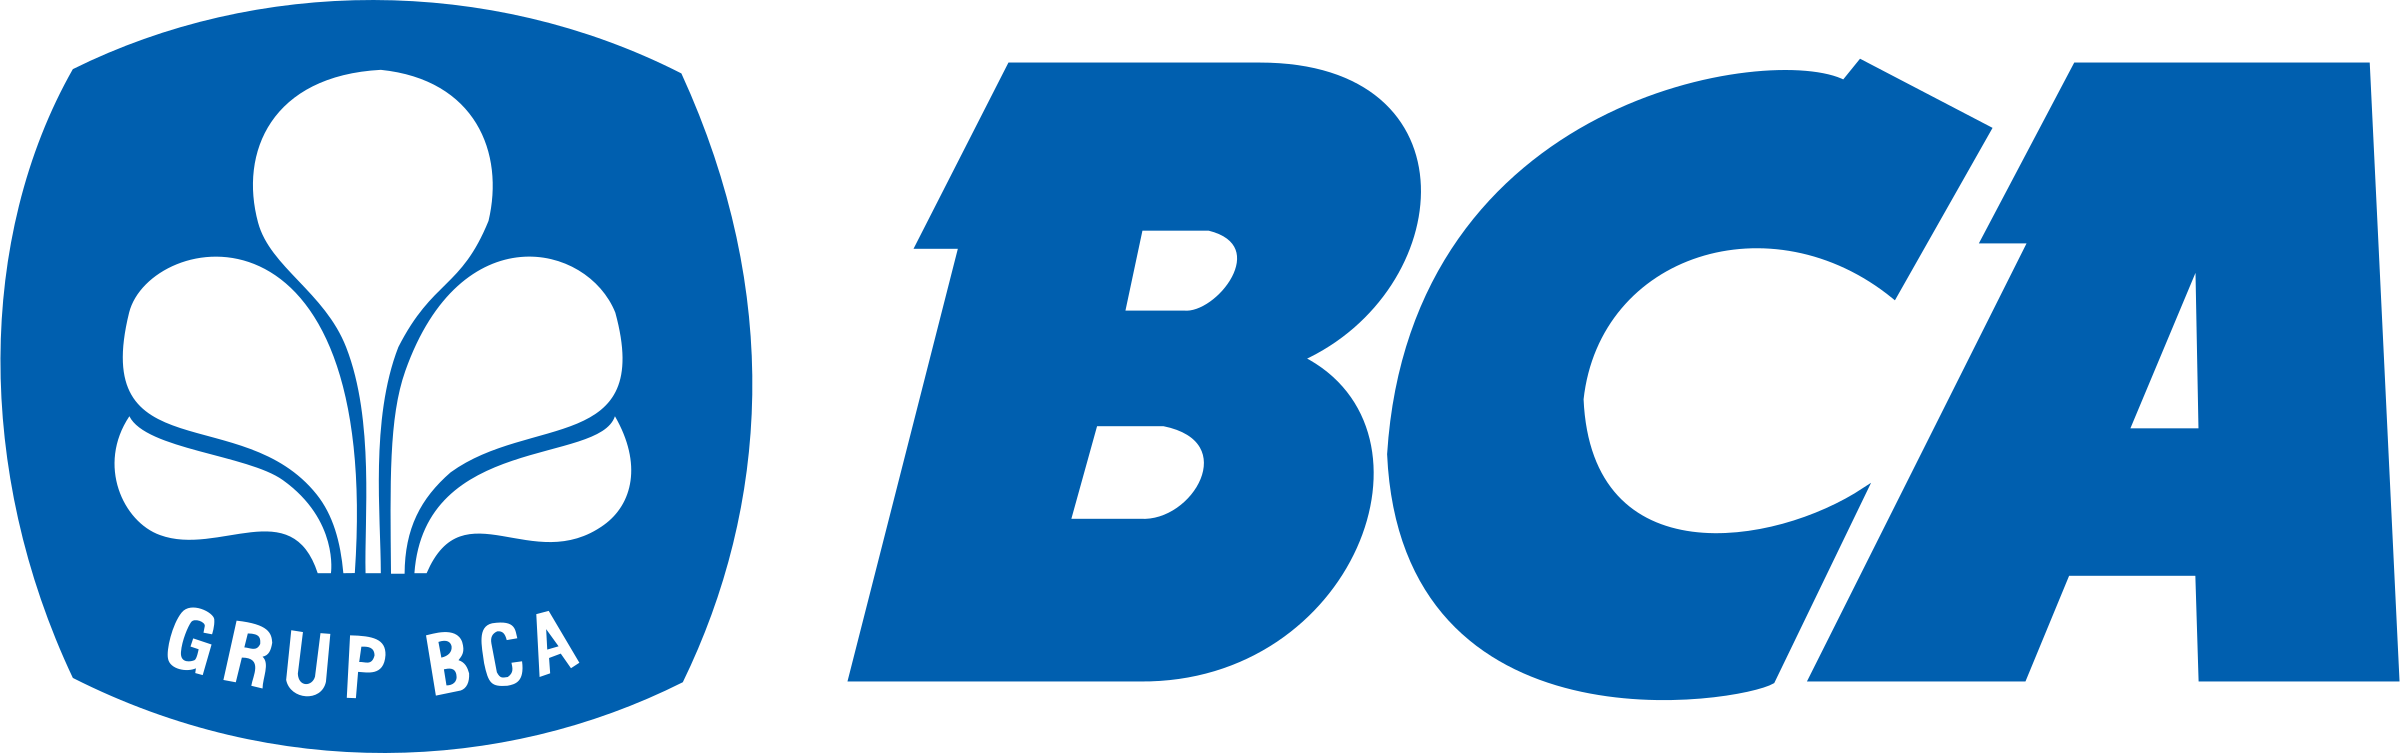 Blue Asia Logo - BCA Bank Central Asia Logo SVG Vector & PNG Transparent - Vector ...